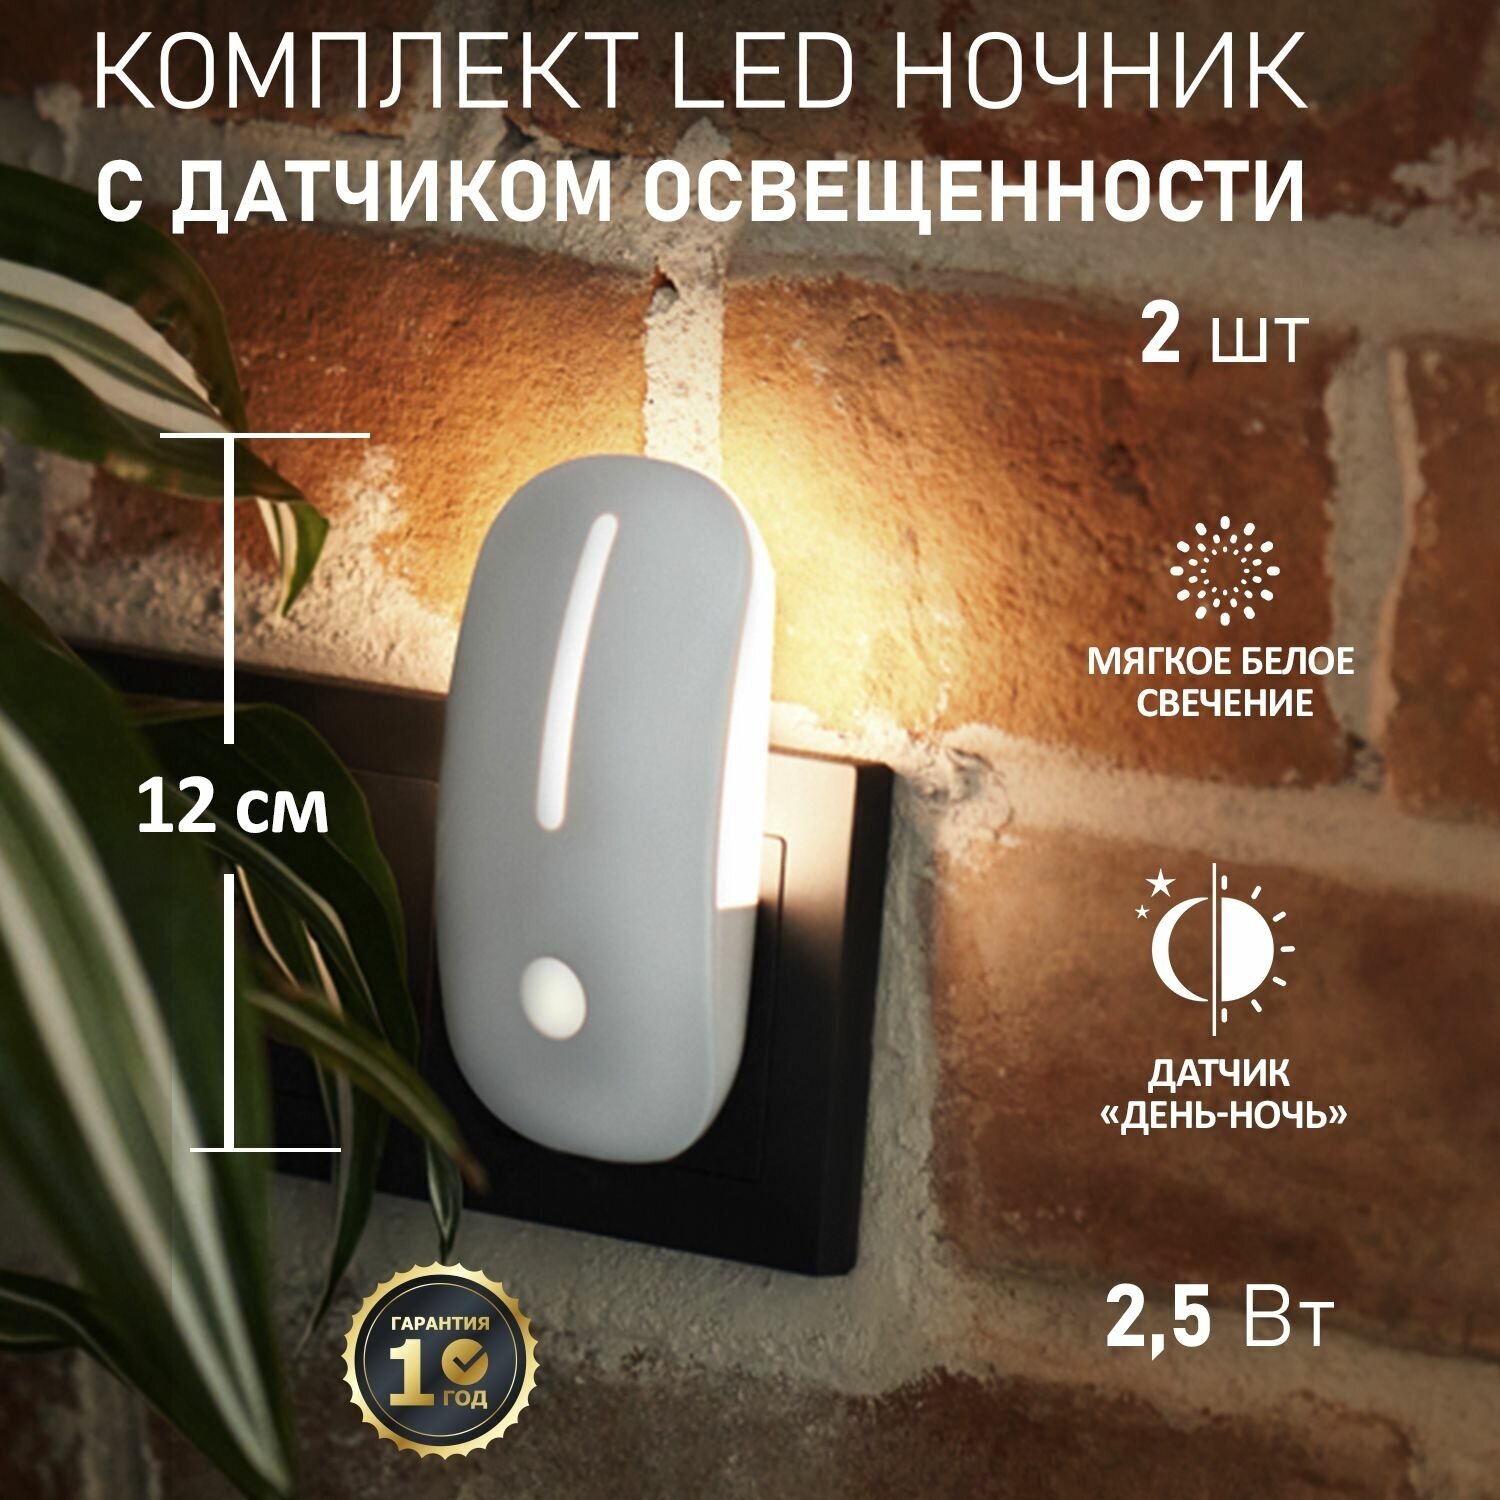 Комплект ночник PROсonnect FIREFLY-PRO датчик день-ночь для комнаты дома дачи офиса теплый свет, 2 шт